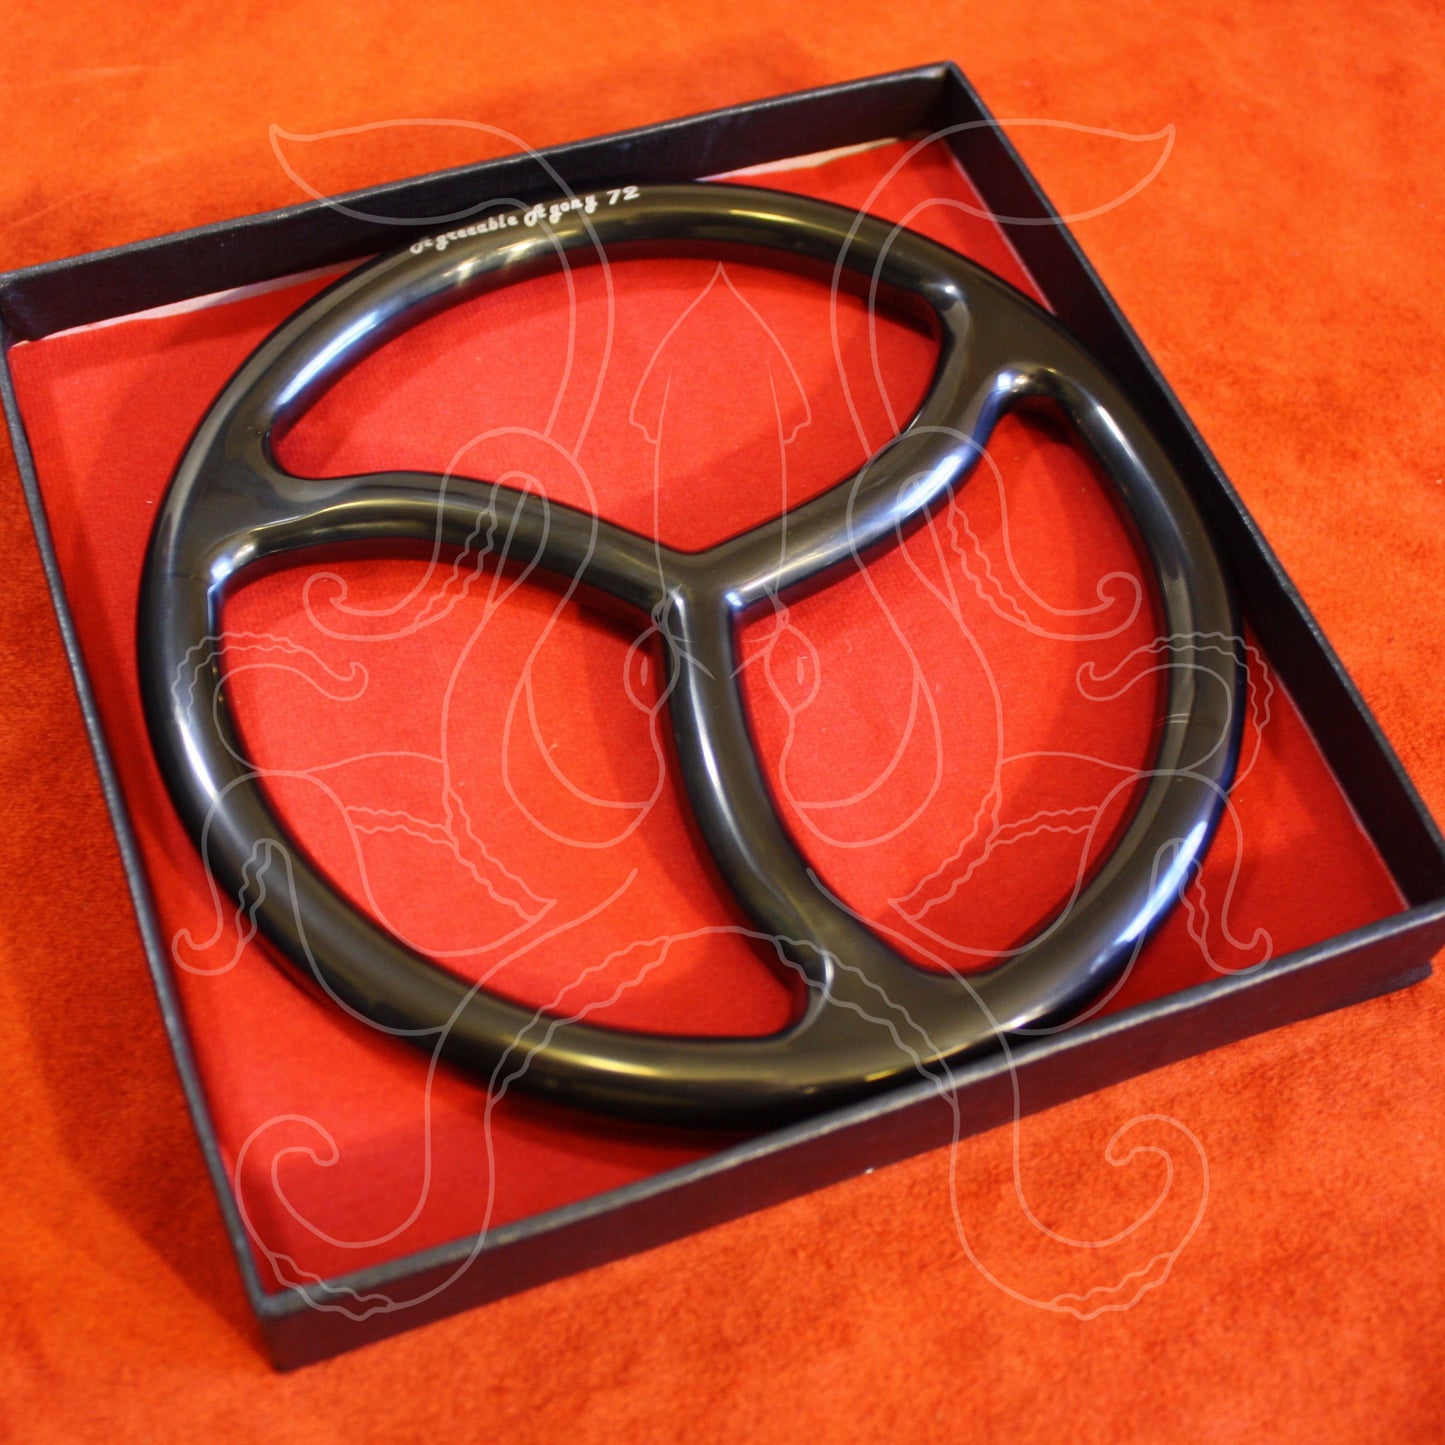 Black Titanium Bonded Steel Suspension Rings